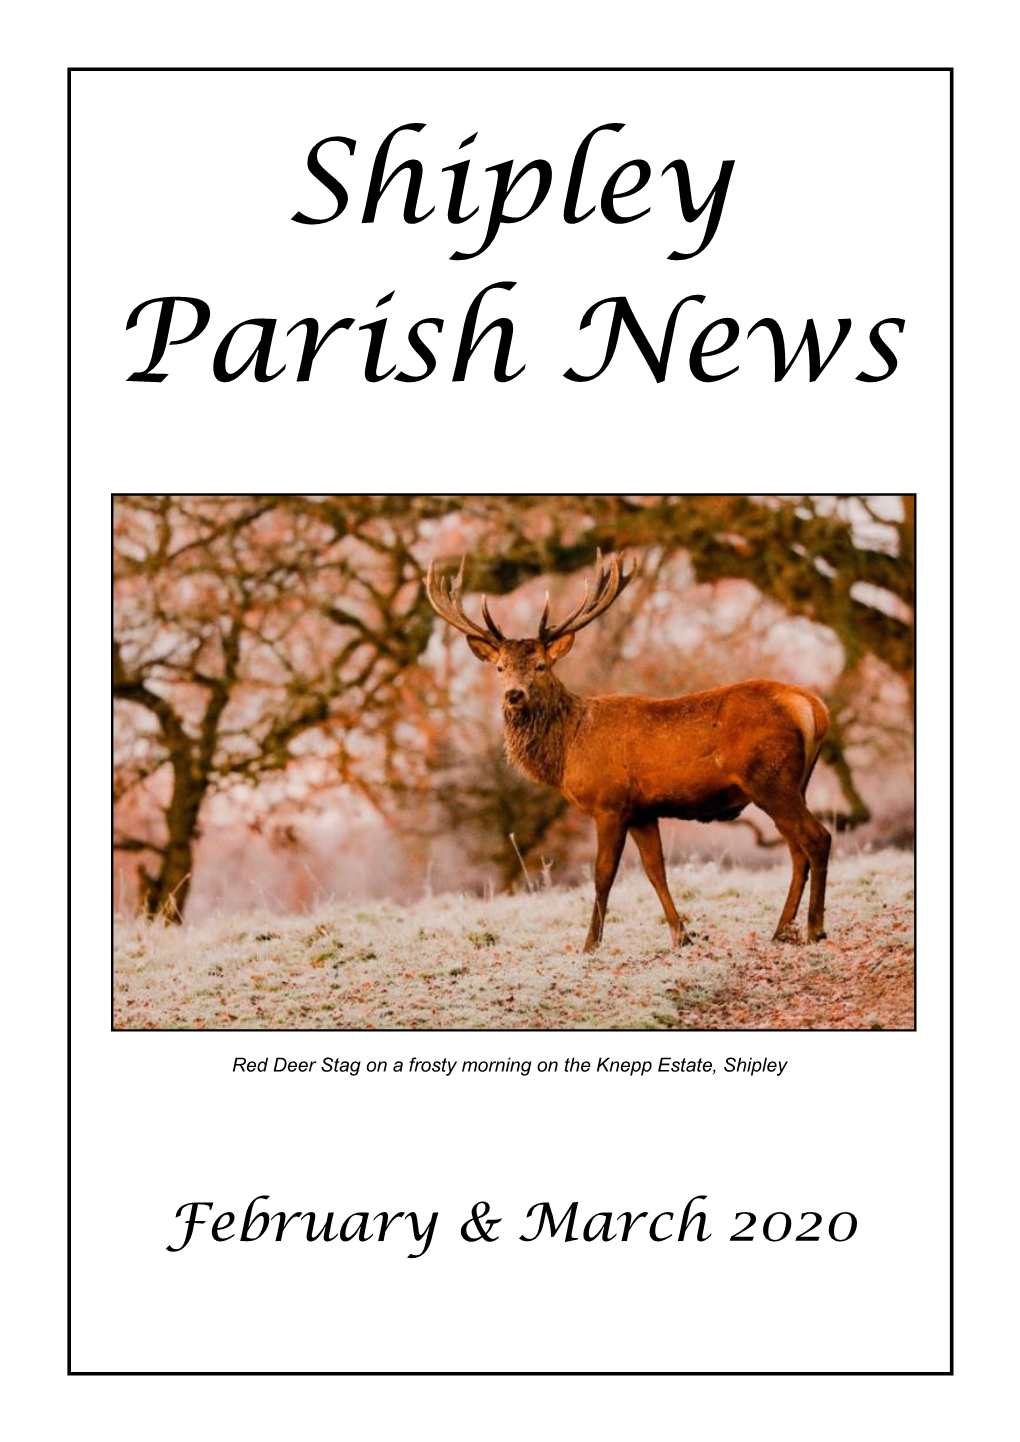 Shipley Parish News